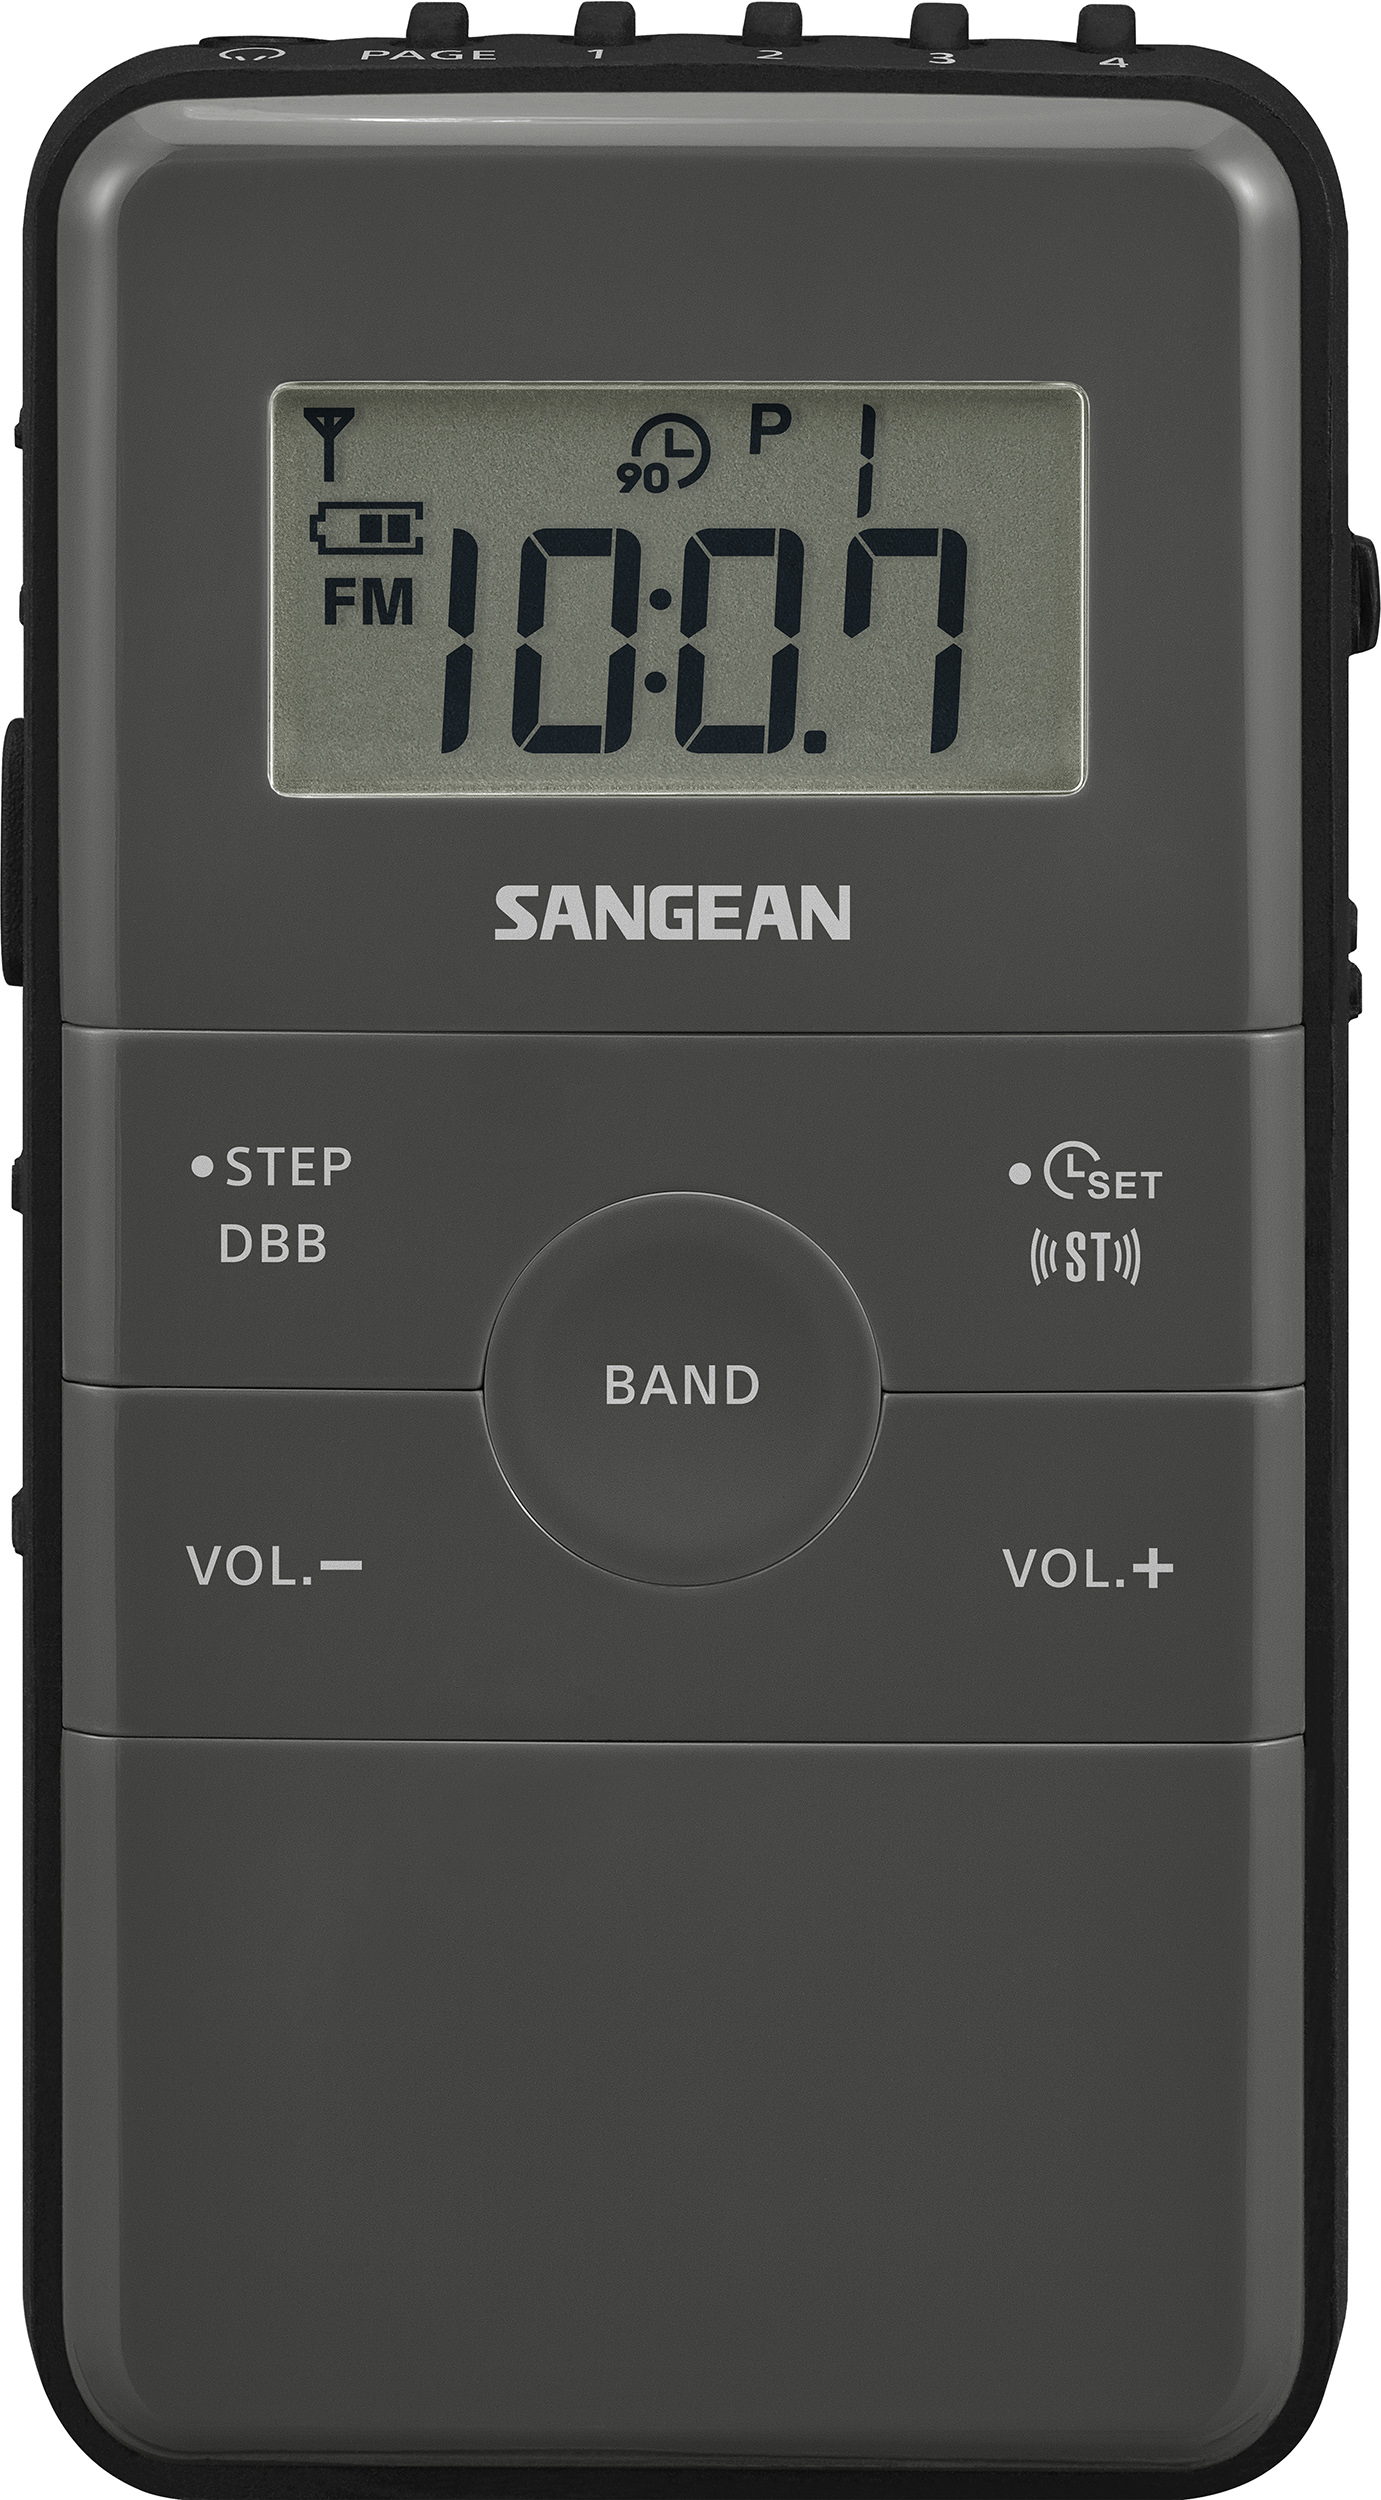 DT-140 (POCKET140), radio portable FM/AM, rechargeable, gris/noir